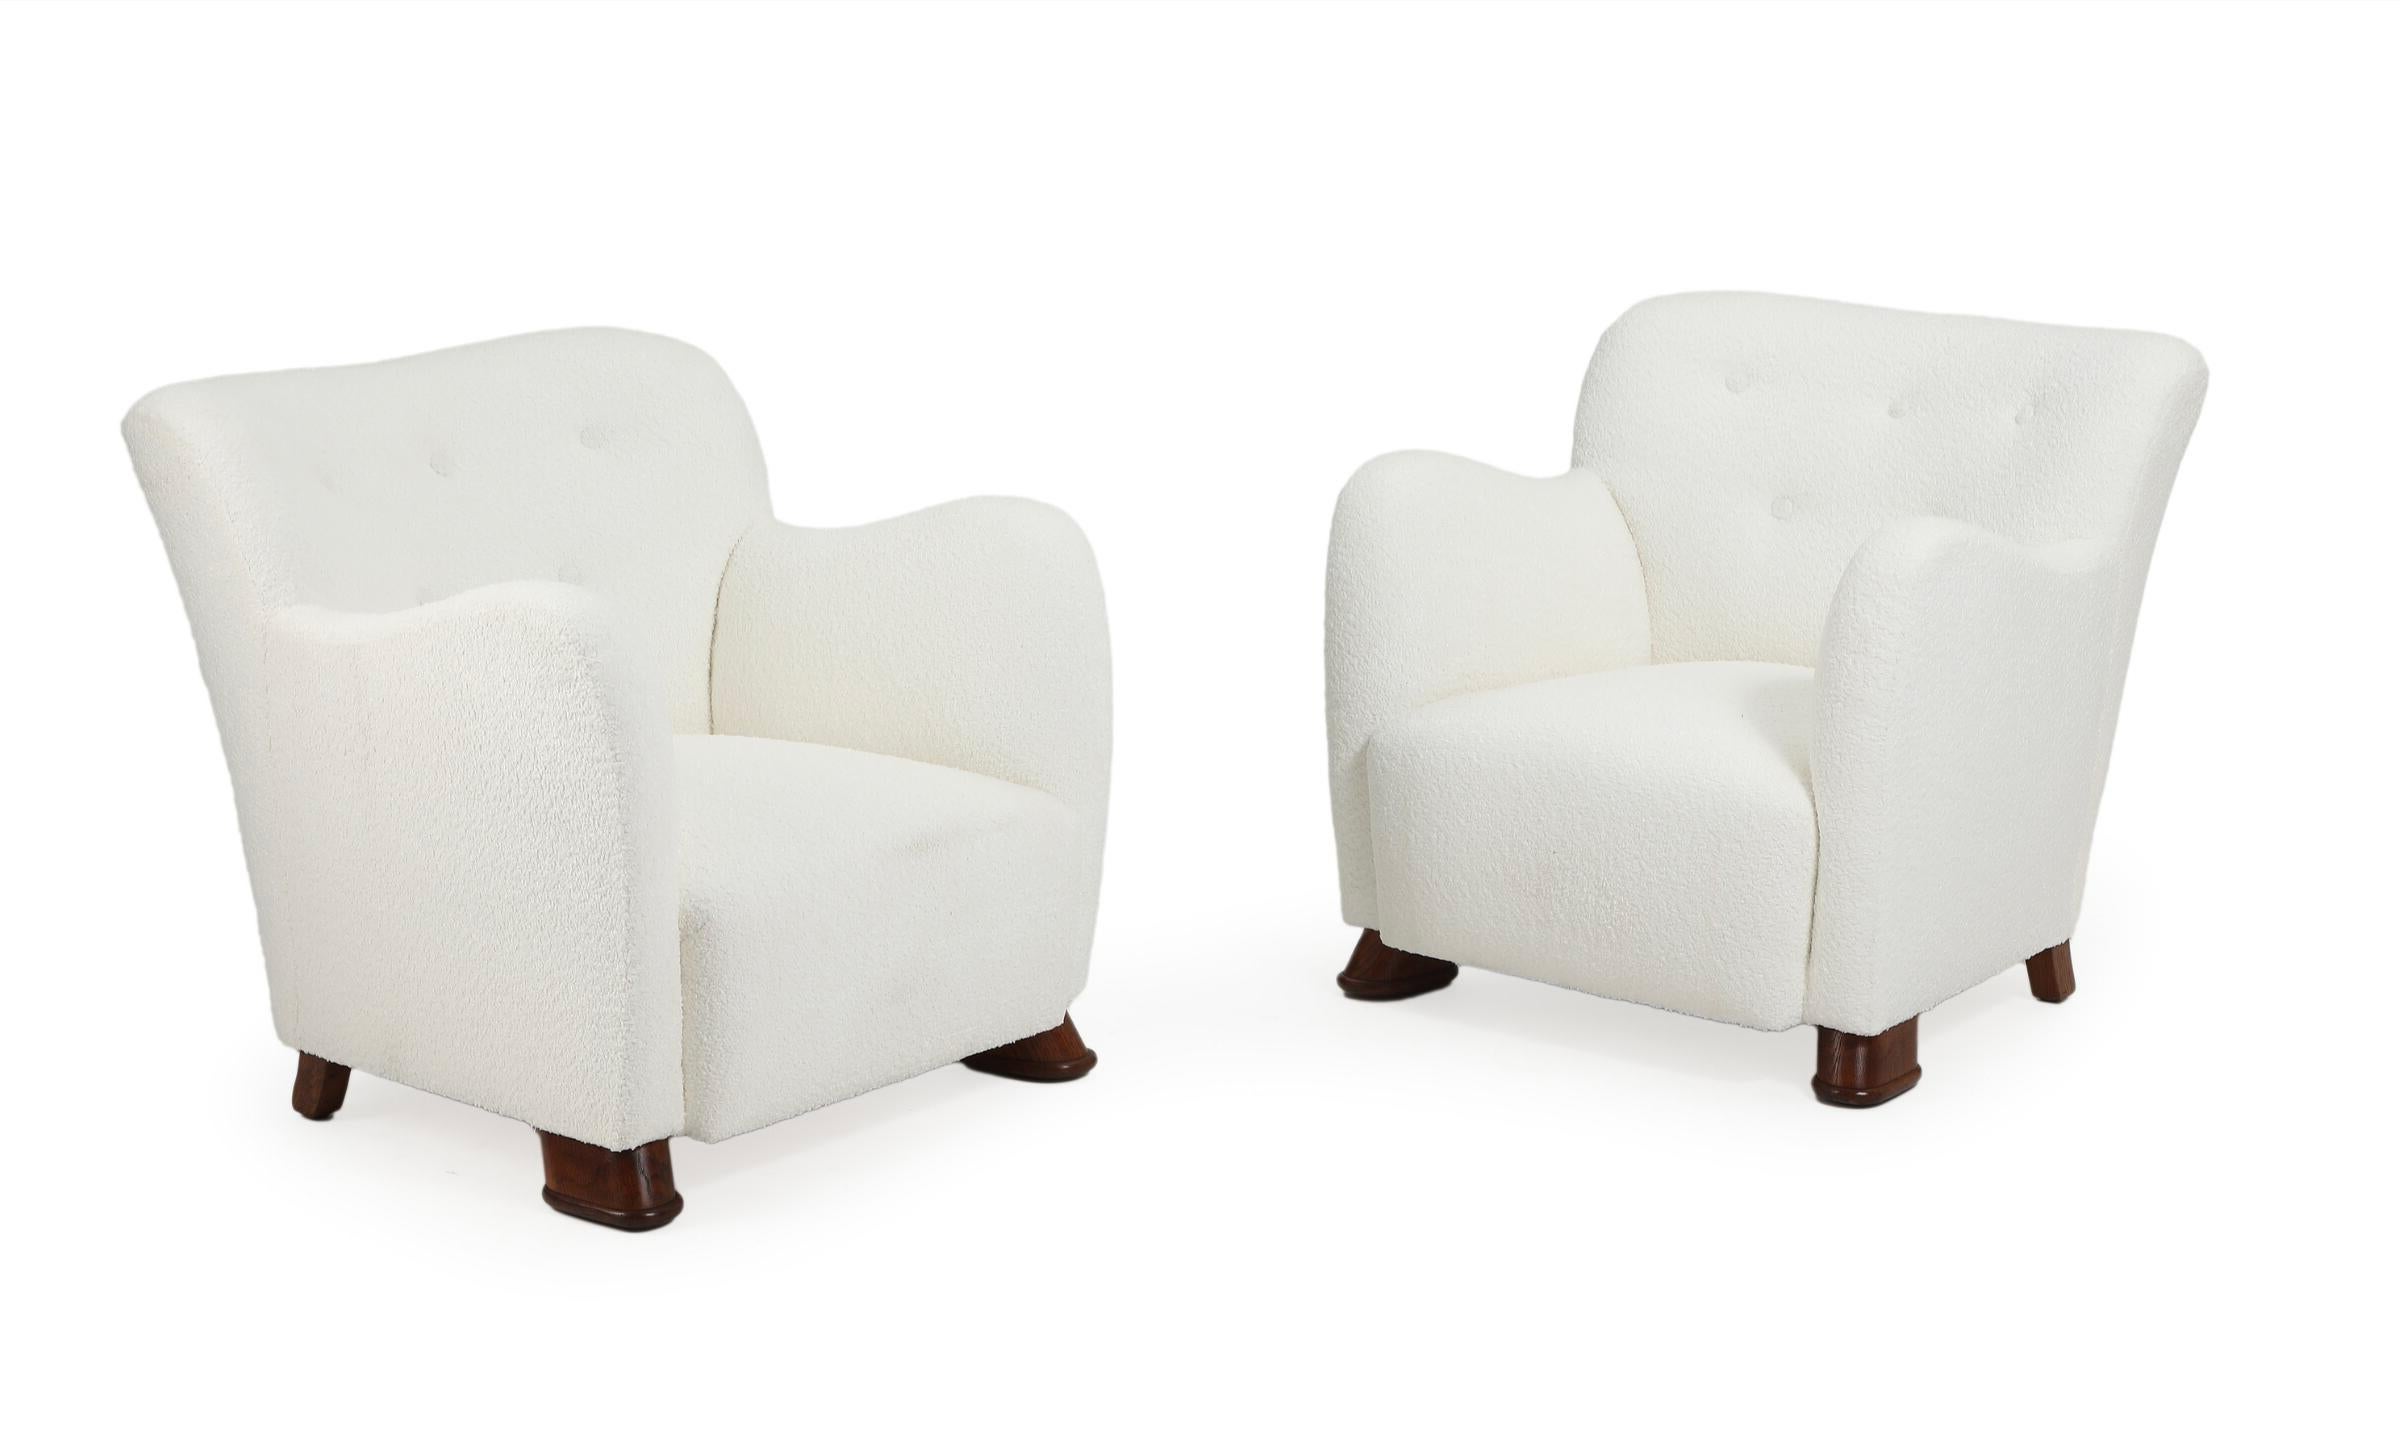 Paire de fauteuils easy, design danois, tapissés de bouclé clair. Original de la Suède des années 1940. Les chaises sont en parfait état et n'ont pas été utilisées après avoir été tapissées récemment.

N'hésitez pas à demander un tarif de livraison